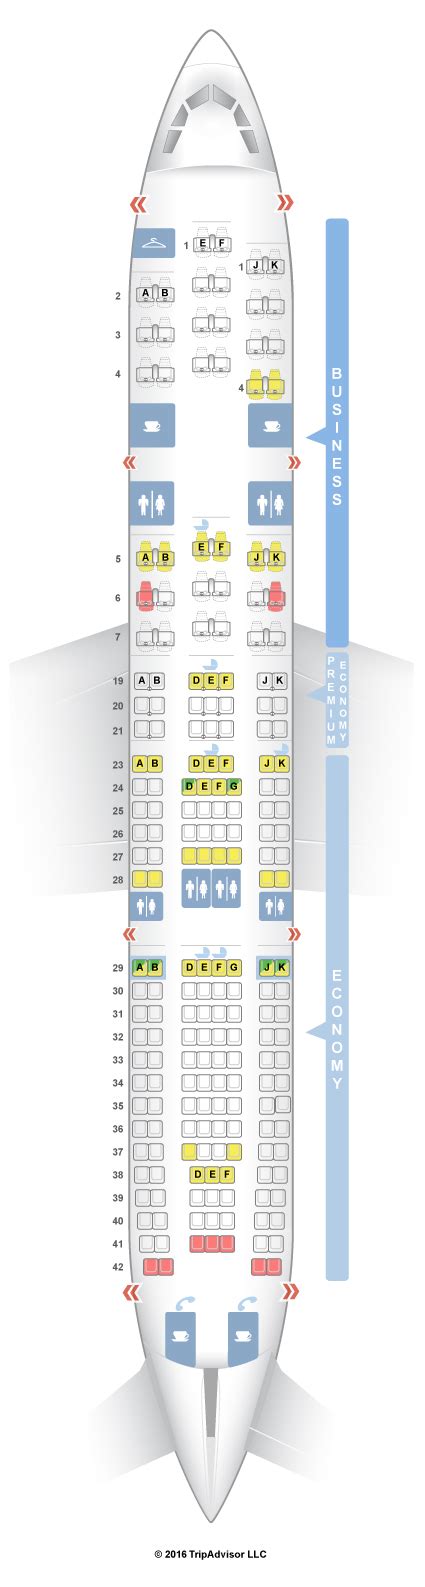 Seatguru Seat Map Air France Airbus A330 200 332